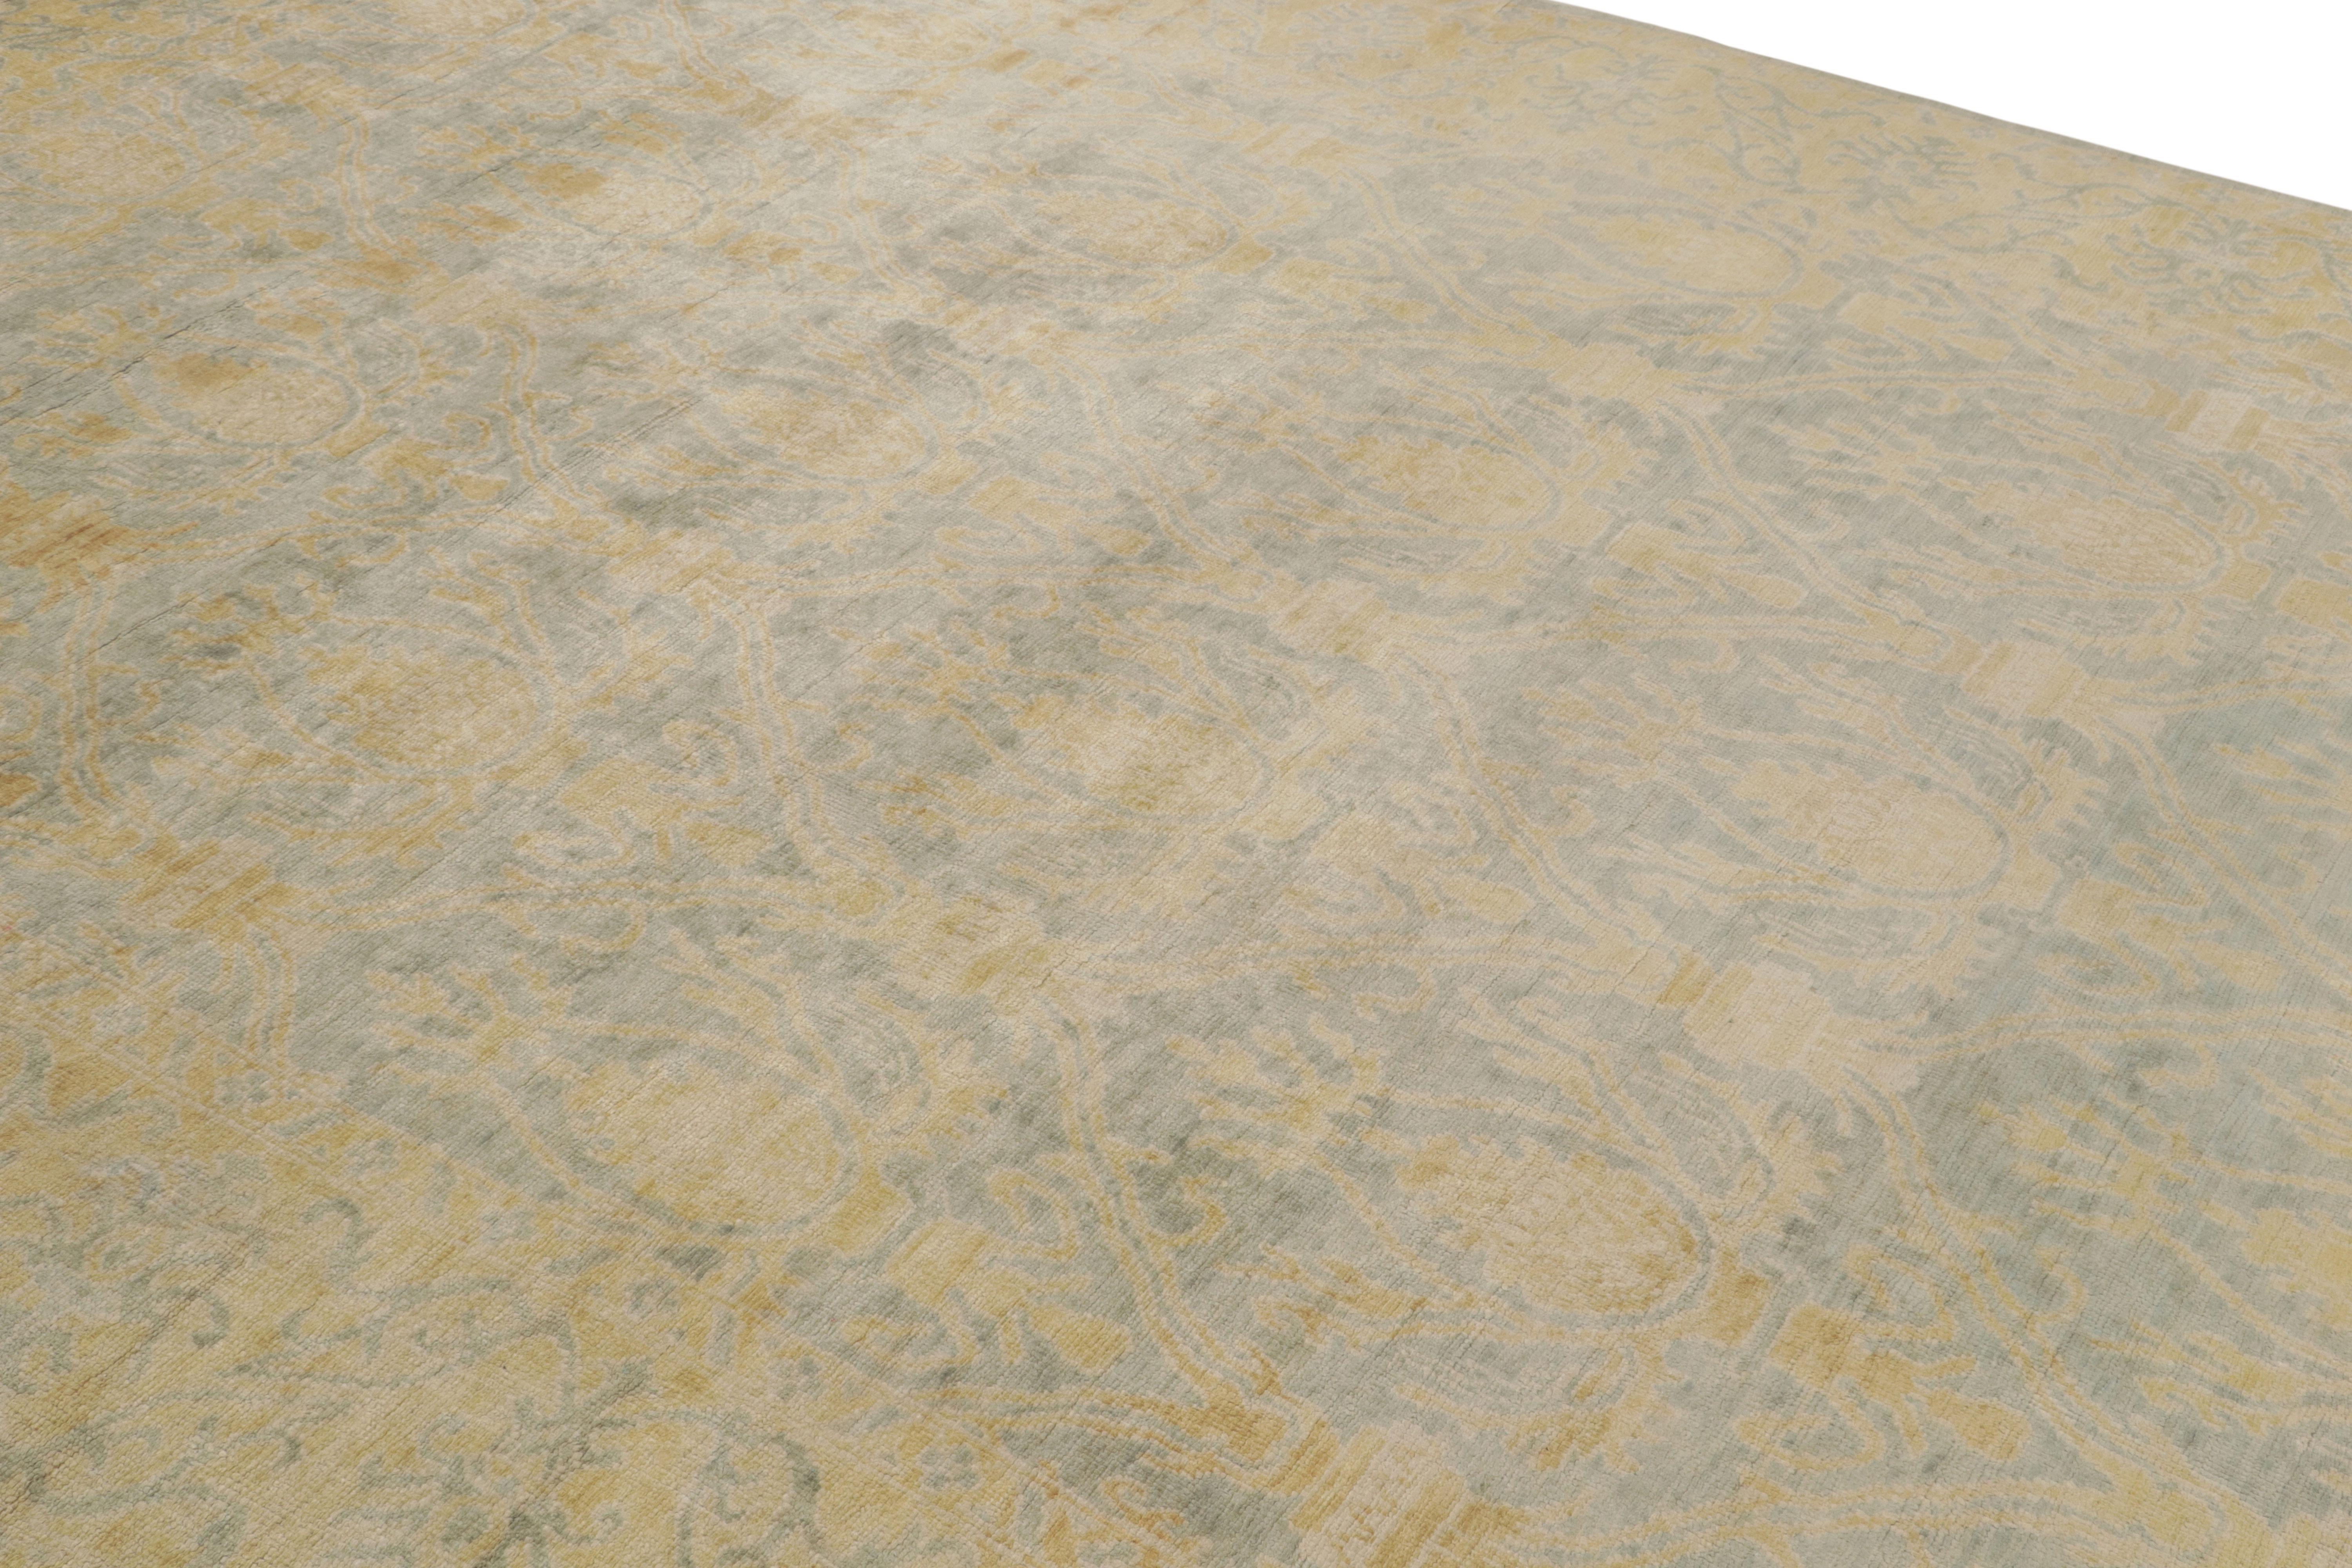 Issu de notre collection Modern Classics, ce tapis 8x12 s'inspire d'une version espagnole particulière des motifs de tapis Oushak - le tout noué à la main dans de la soie. 

Sur le Design :

Dans cette pièce, les tons bleu clair et or soulignent les